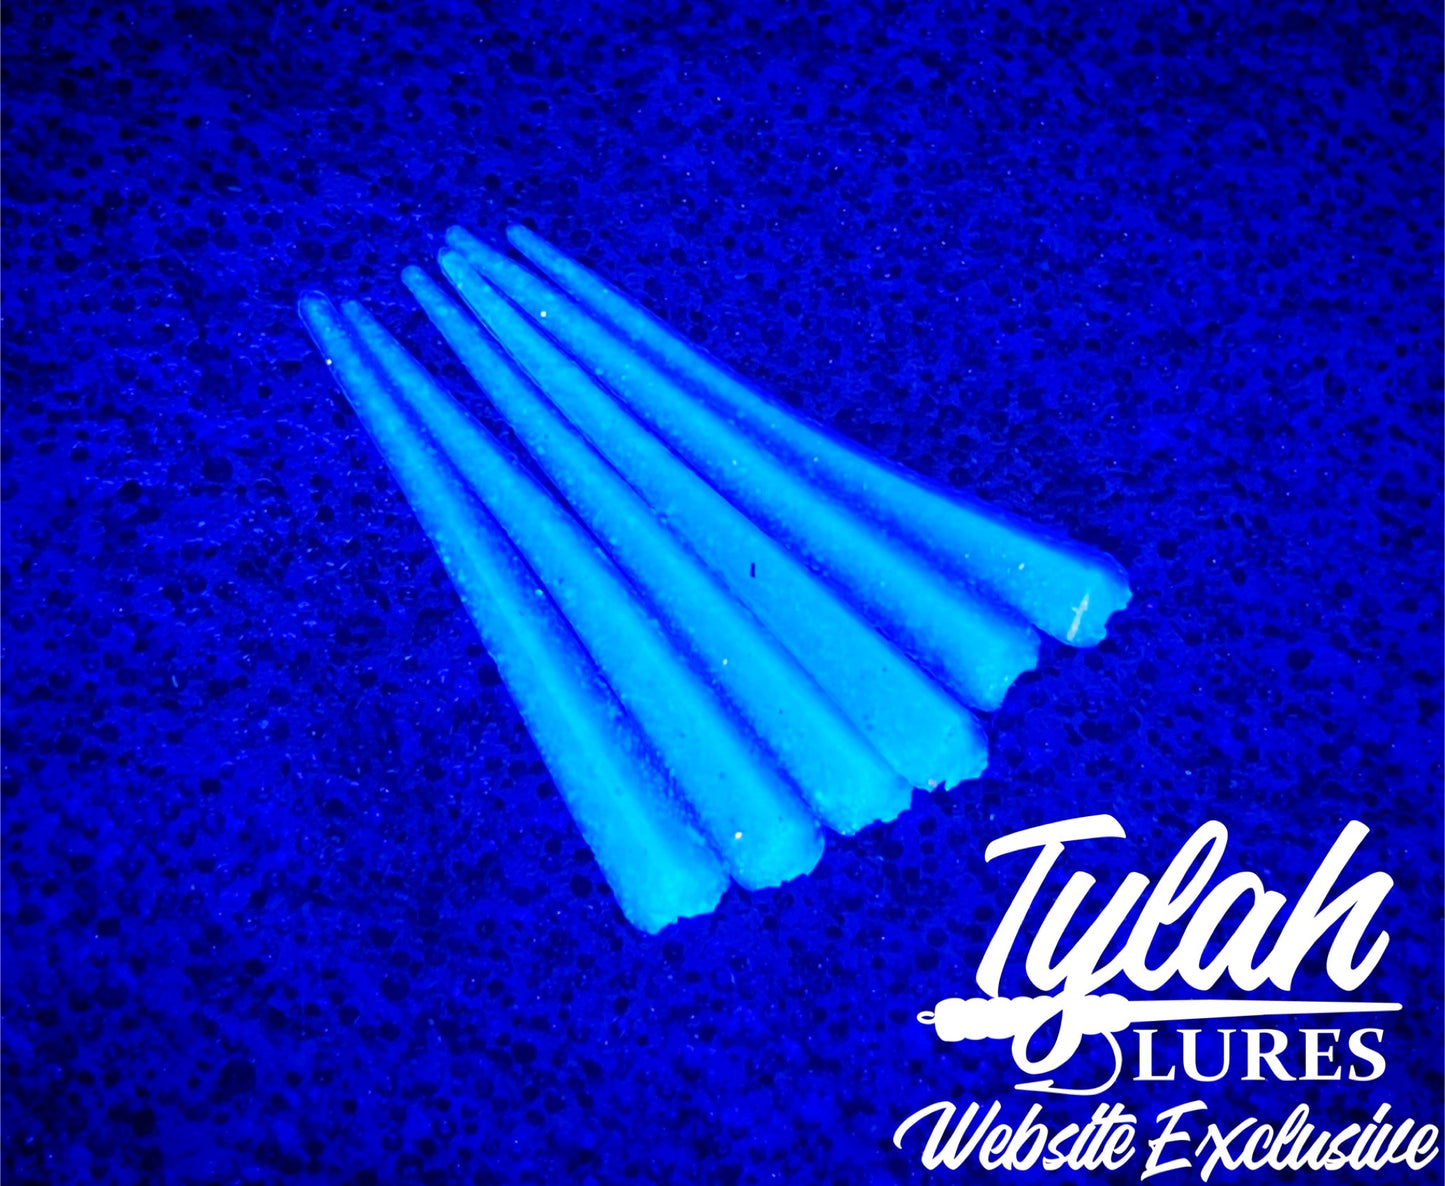 TylahLures Website Exclusive 1.5Inch Glow Half Strip